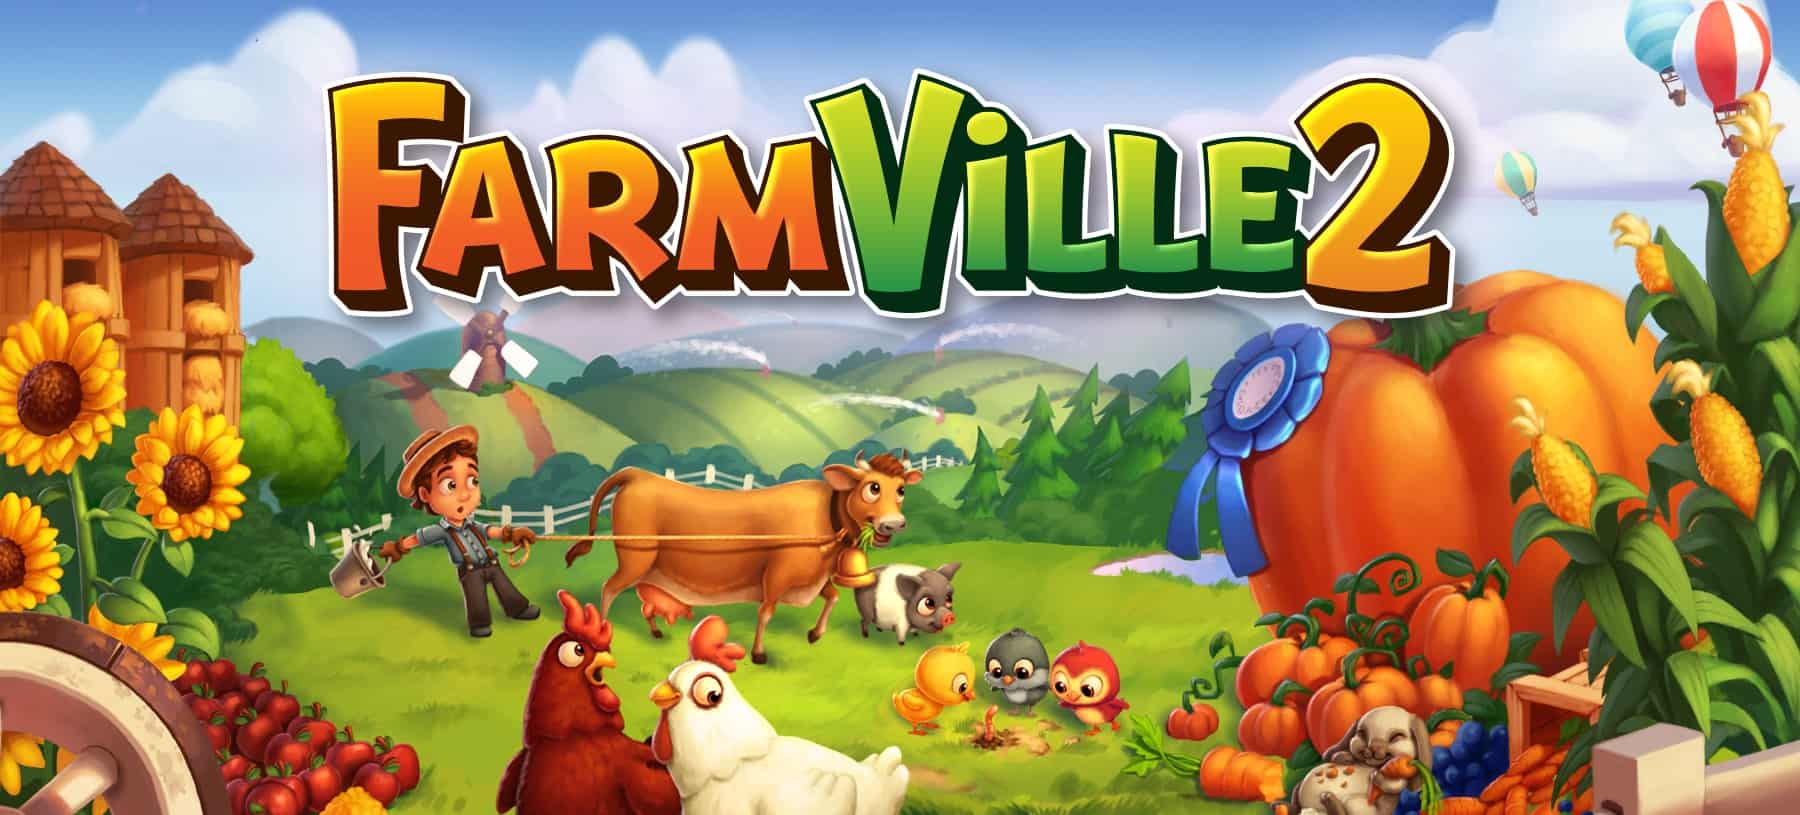 FarmVille 2: Game Updates